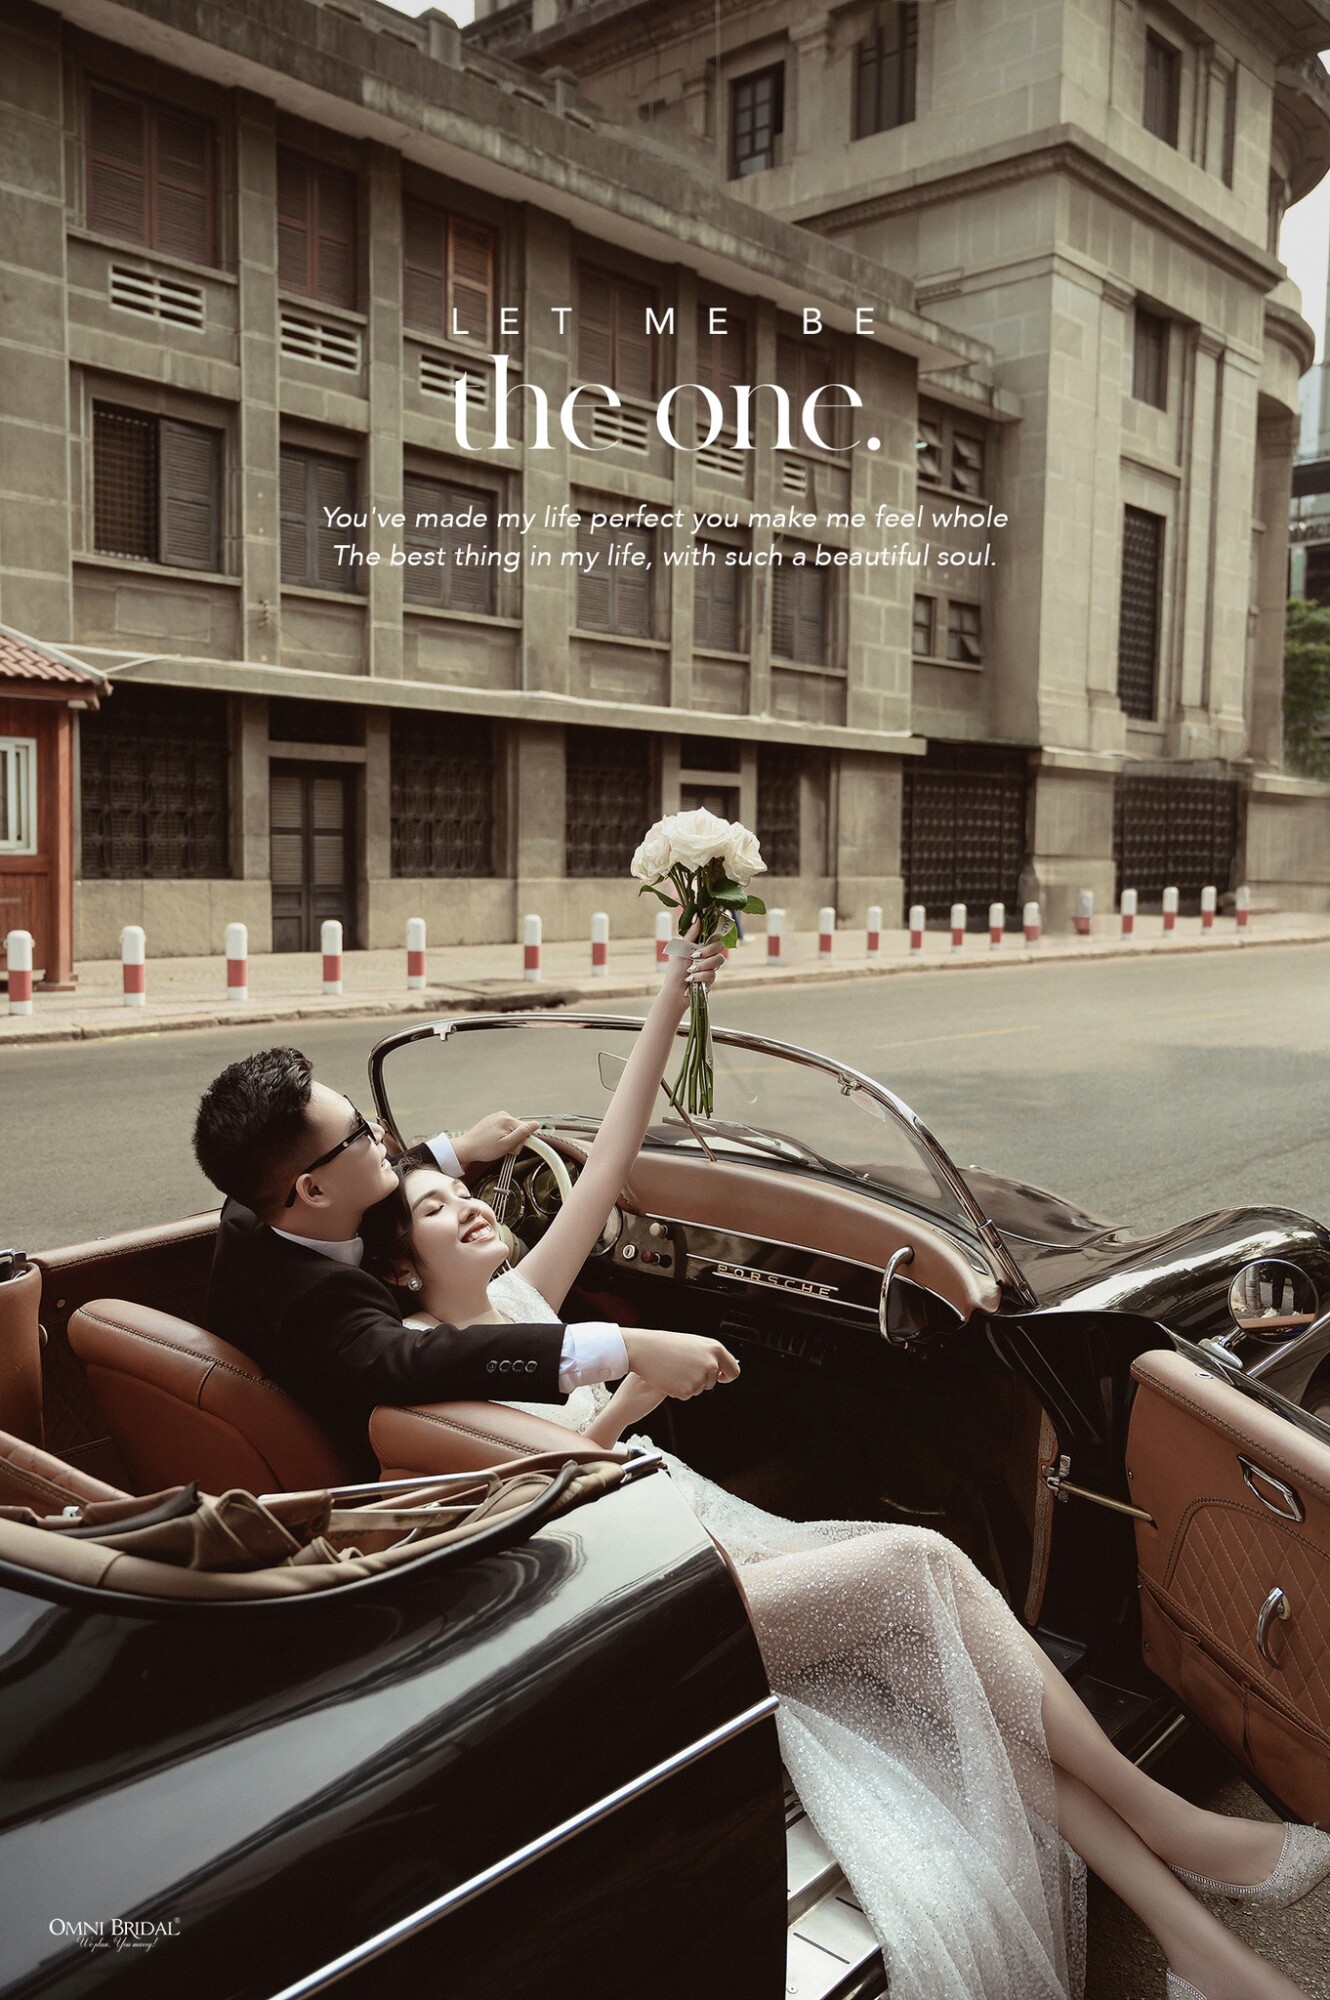 Đạo cụ phổ biến nhất cho những bức ảnh cưới ngoại cảnh Sài Gòn chính là xe